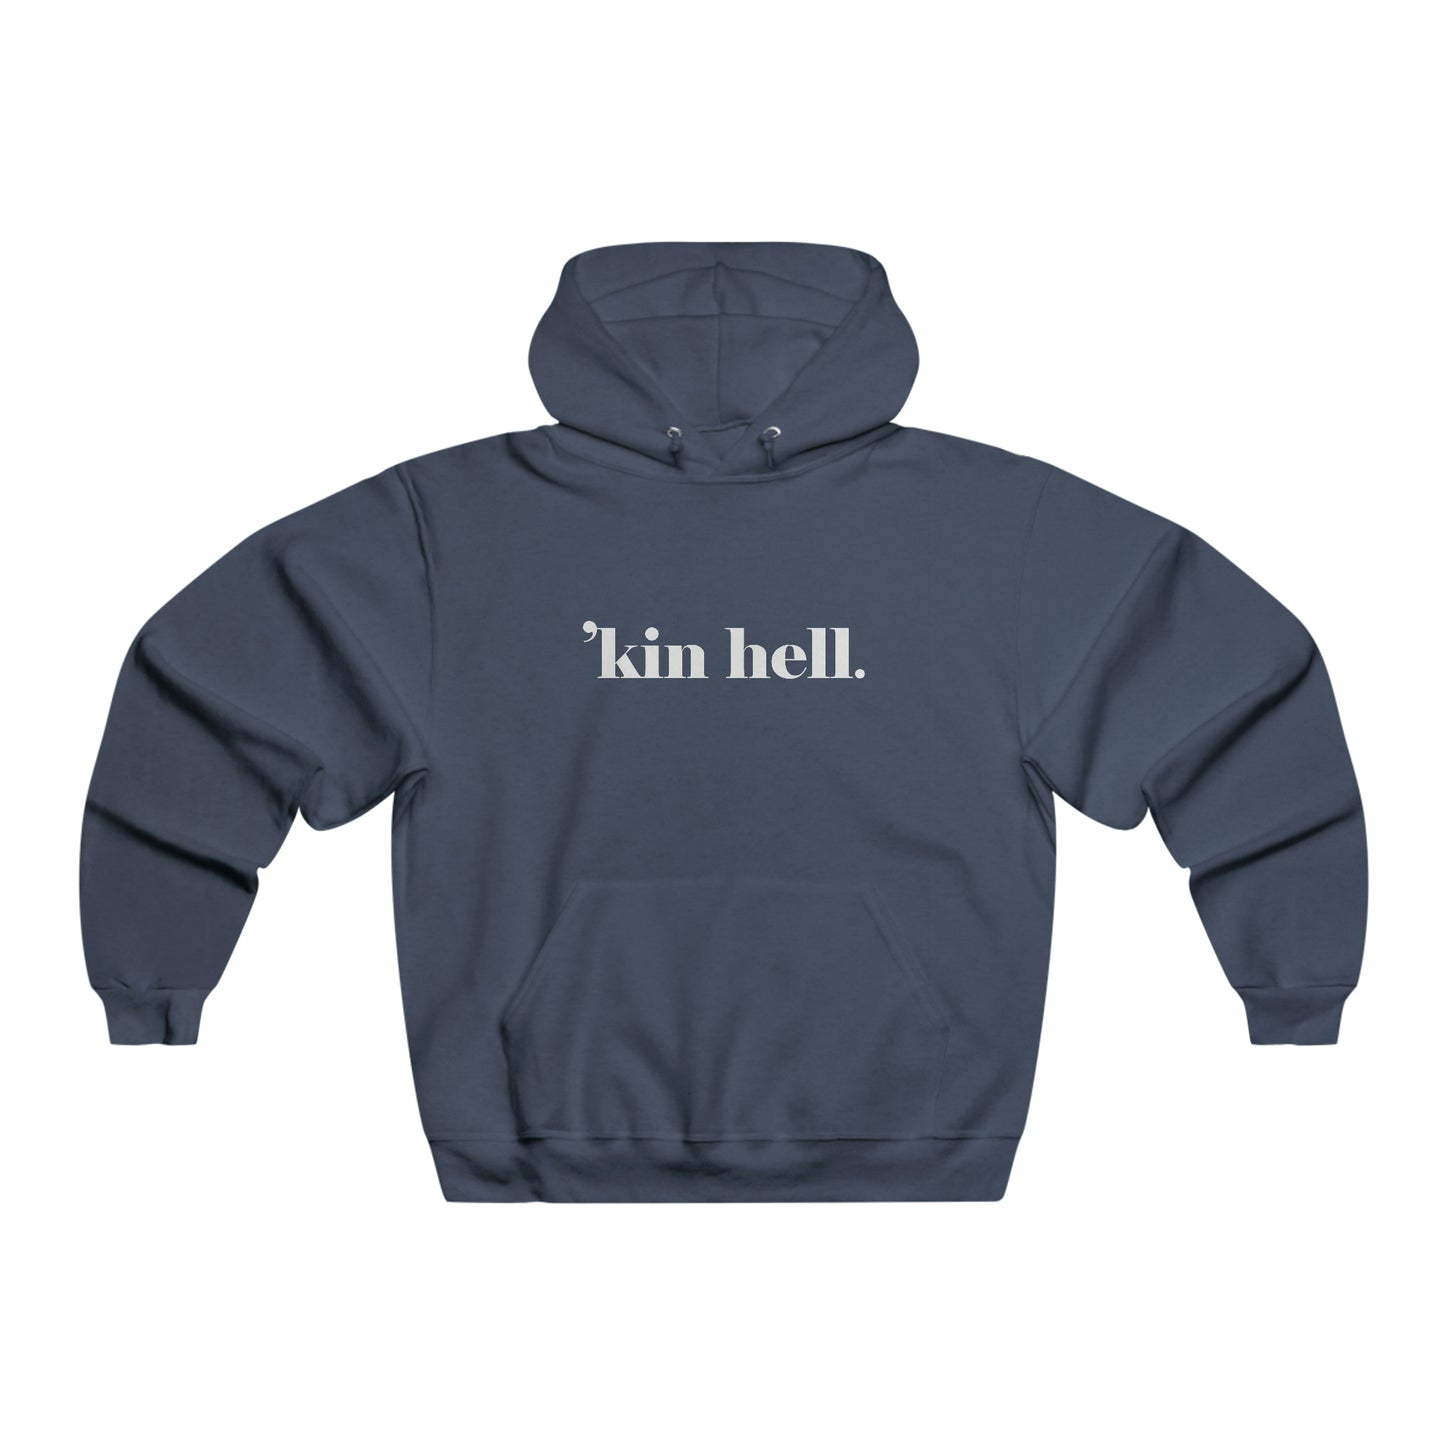 "kin hell. - Hooded Sweatshirt